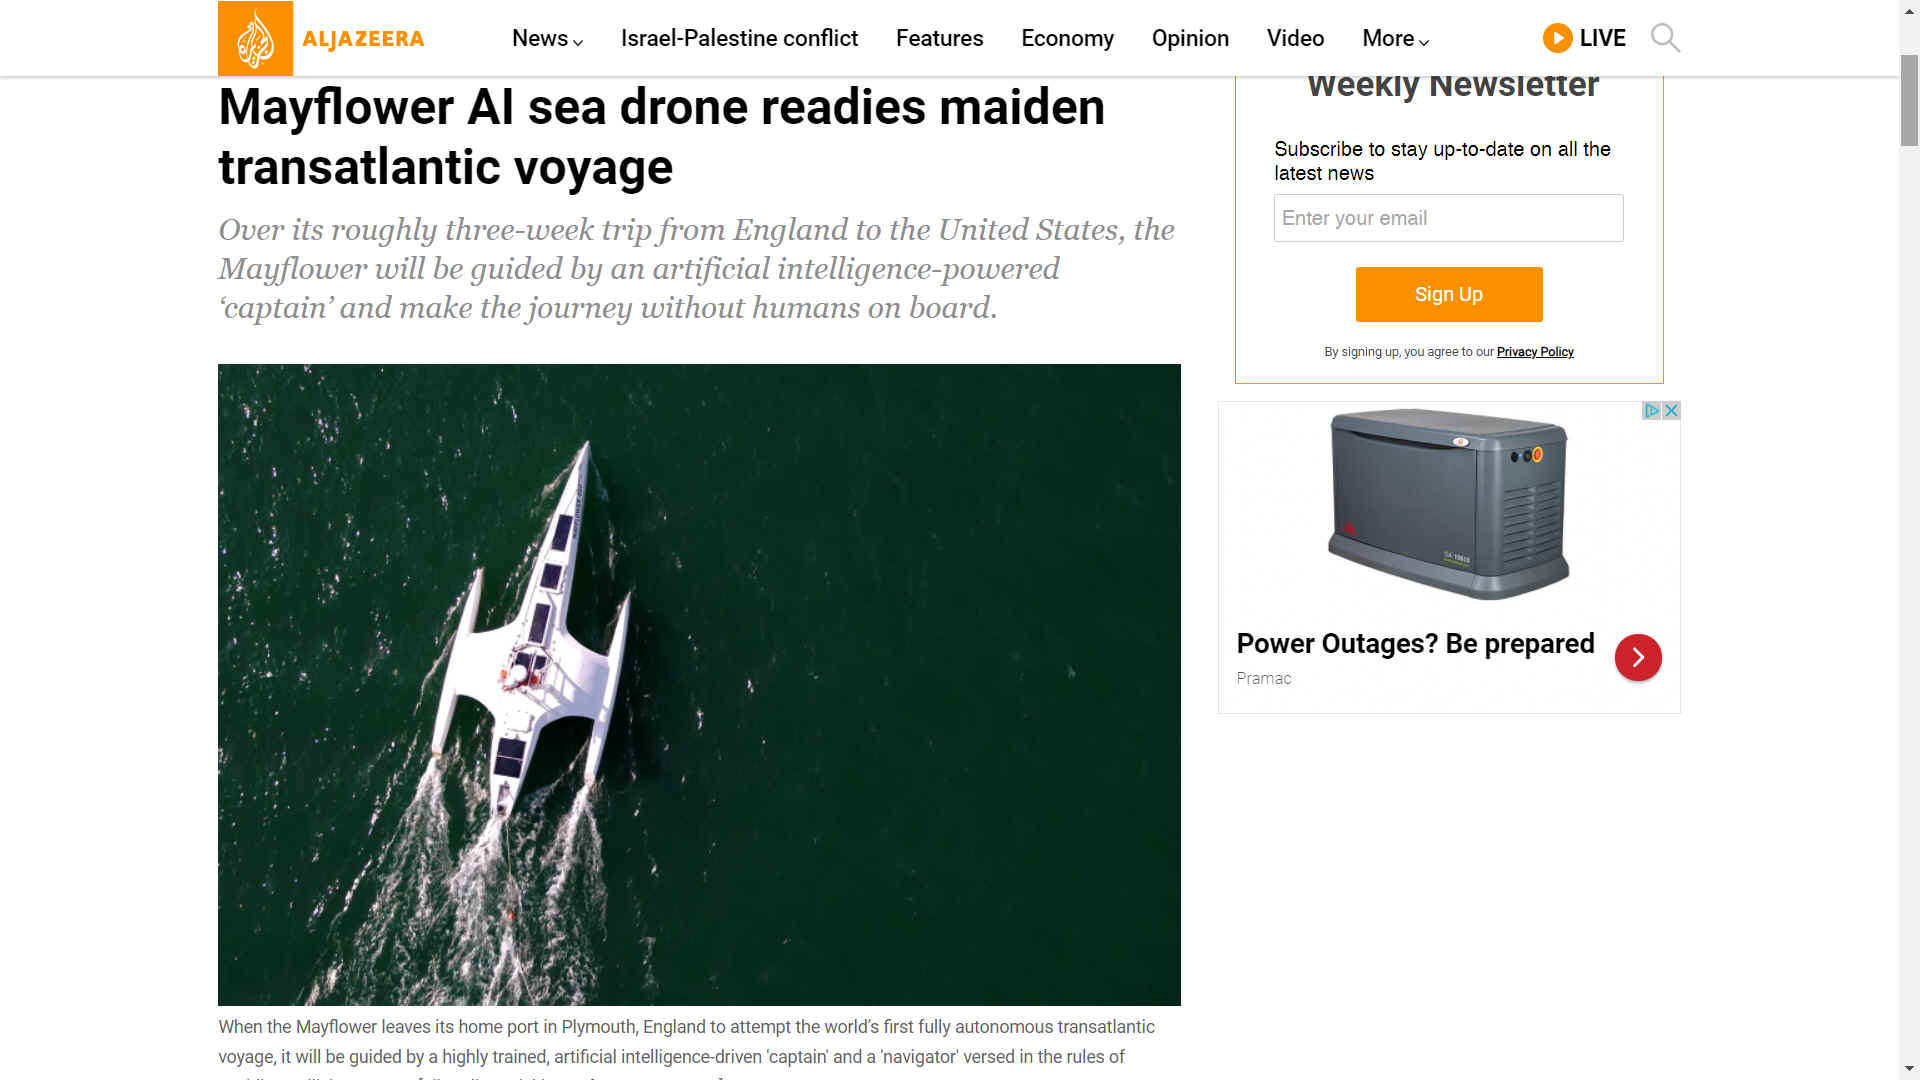 Aljazeera AI sea drone readies maidenn transatlantic voyage